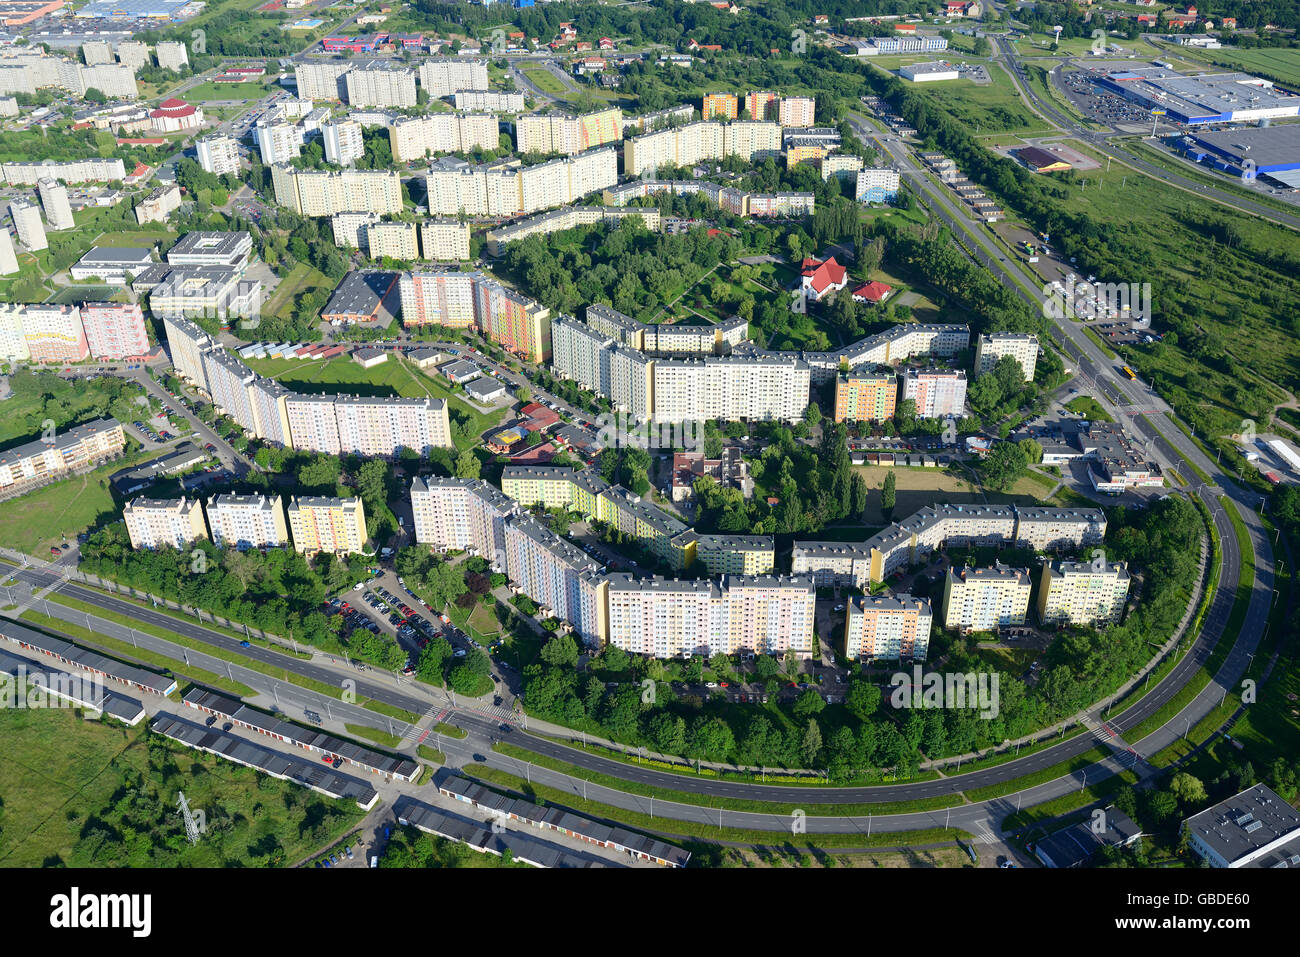 VISTA AEREA. Proprietà immobiliare. Walbrzych, voivodeship inferiore della Slesia, Polonia. Foto Stock